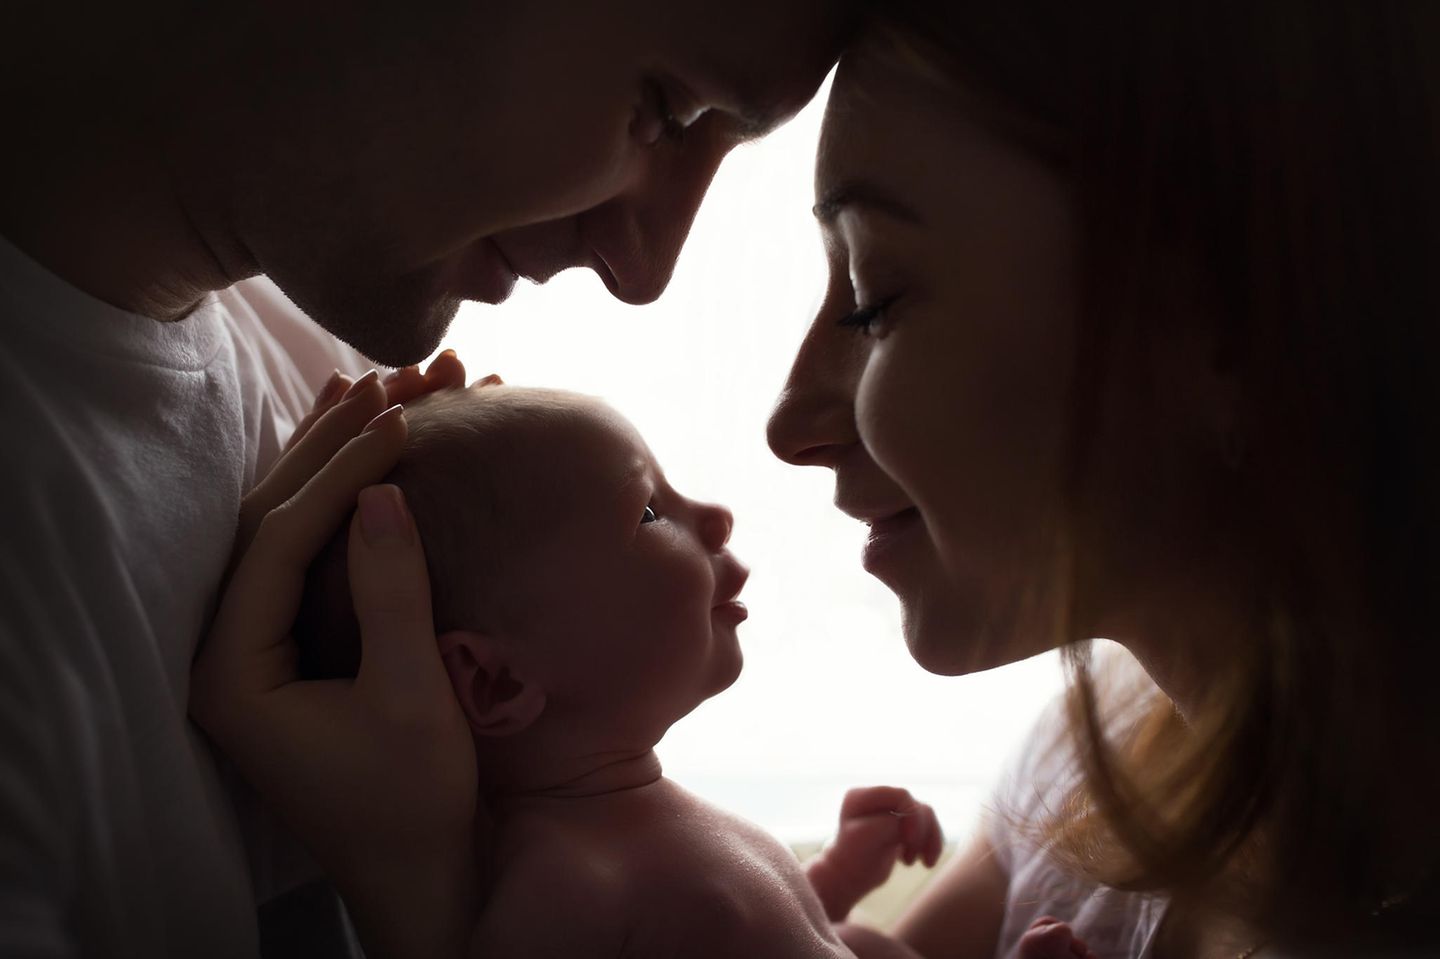 Baby im Radio gewonnen: Symbolbild Eltern halten Baby